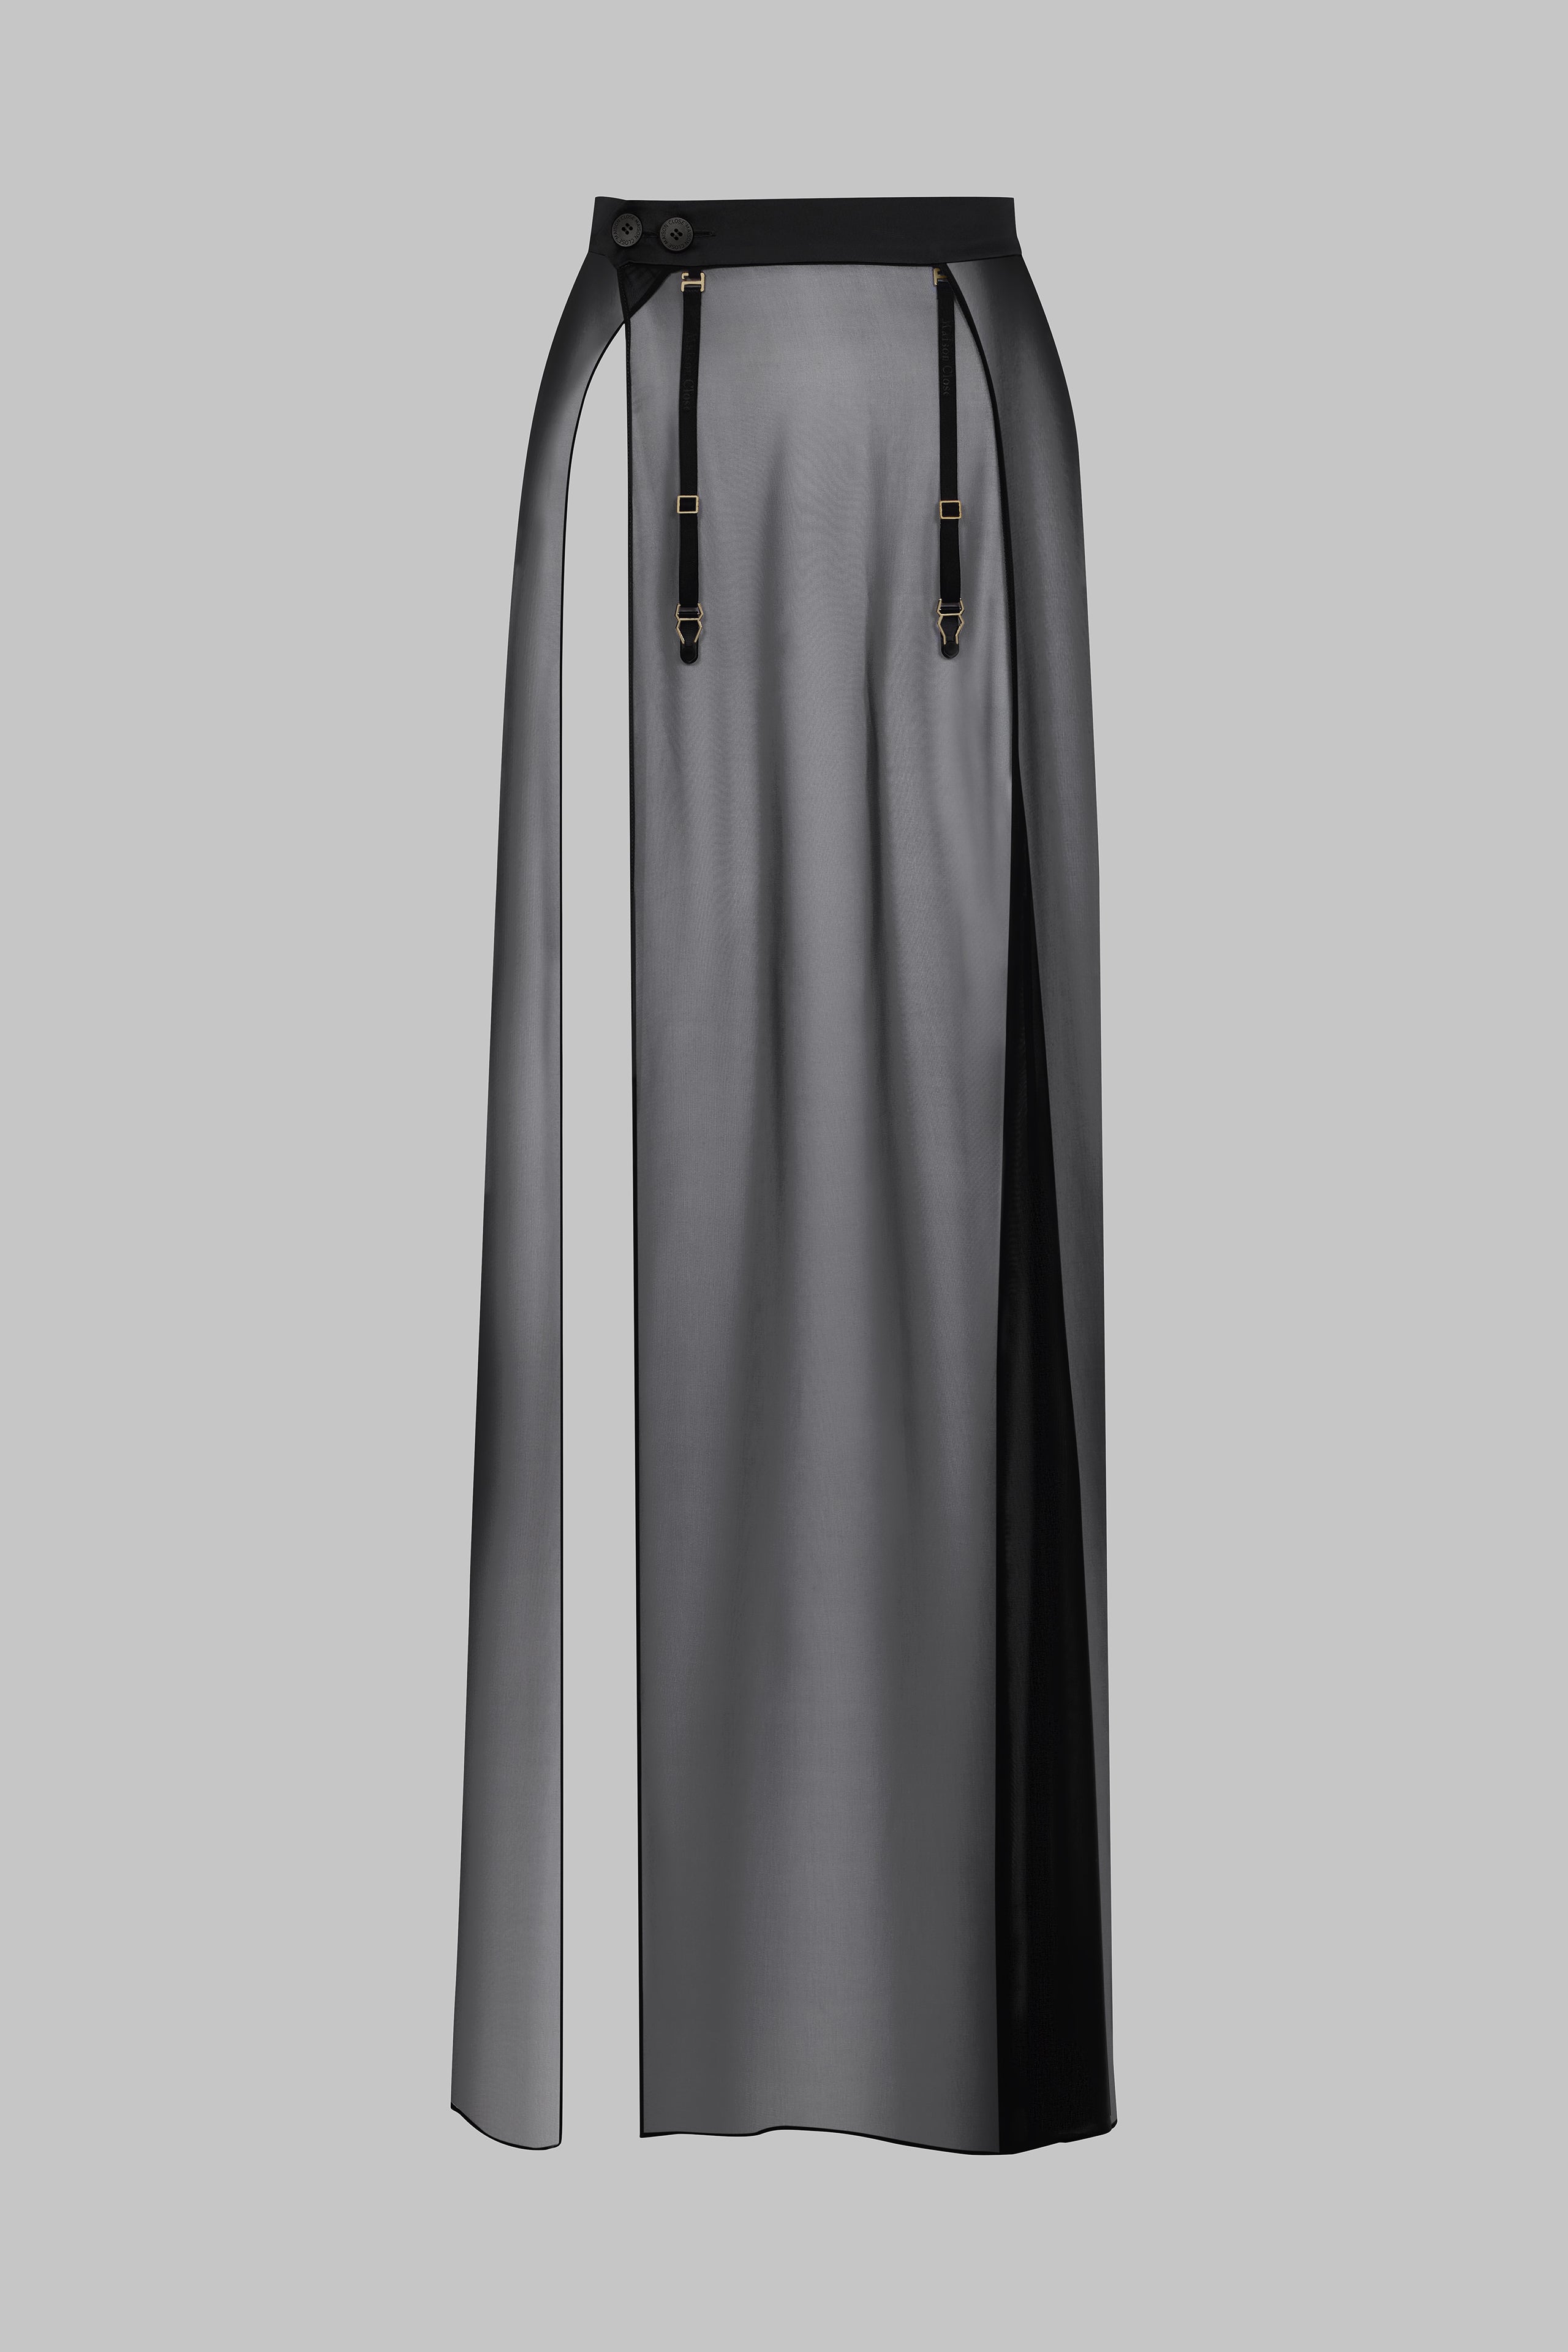 005 - Jupe longue porte-feuille transparente en mousseline